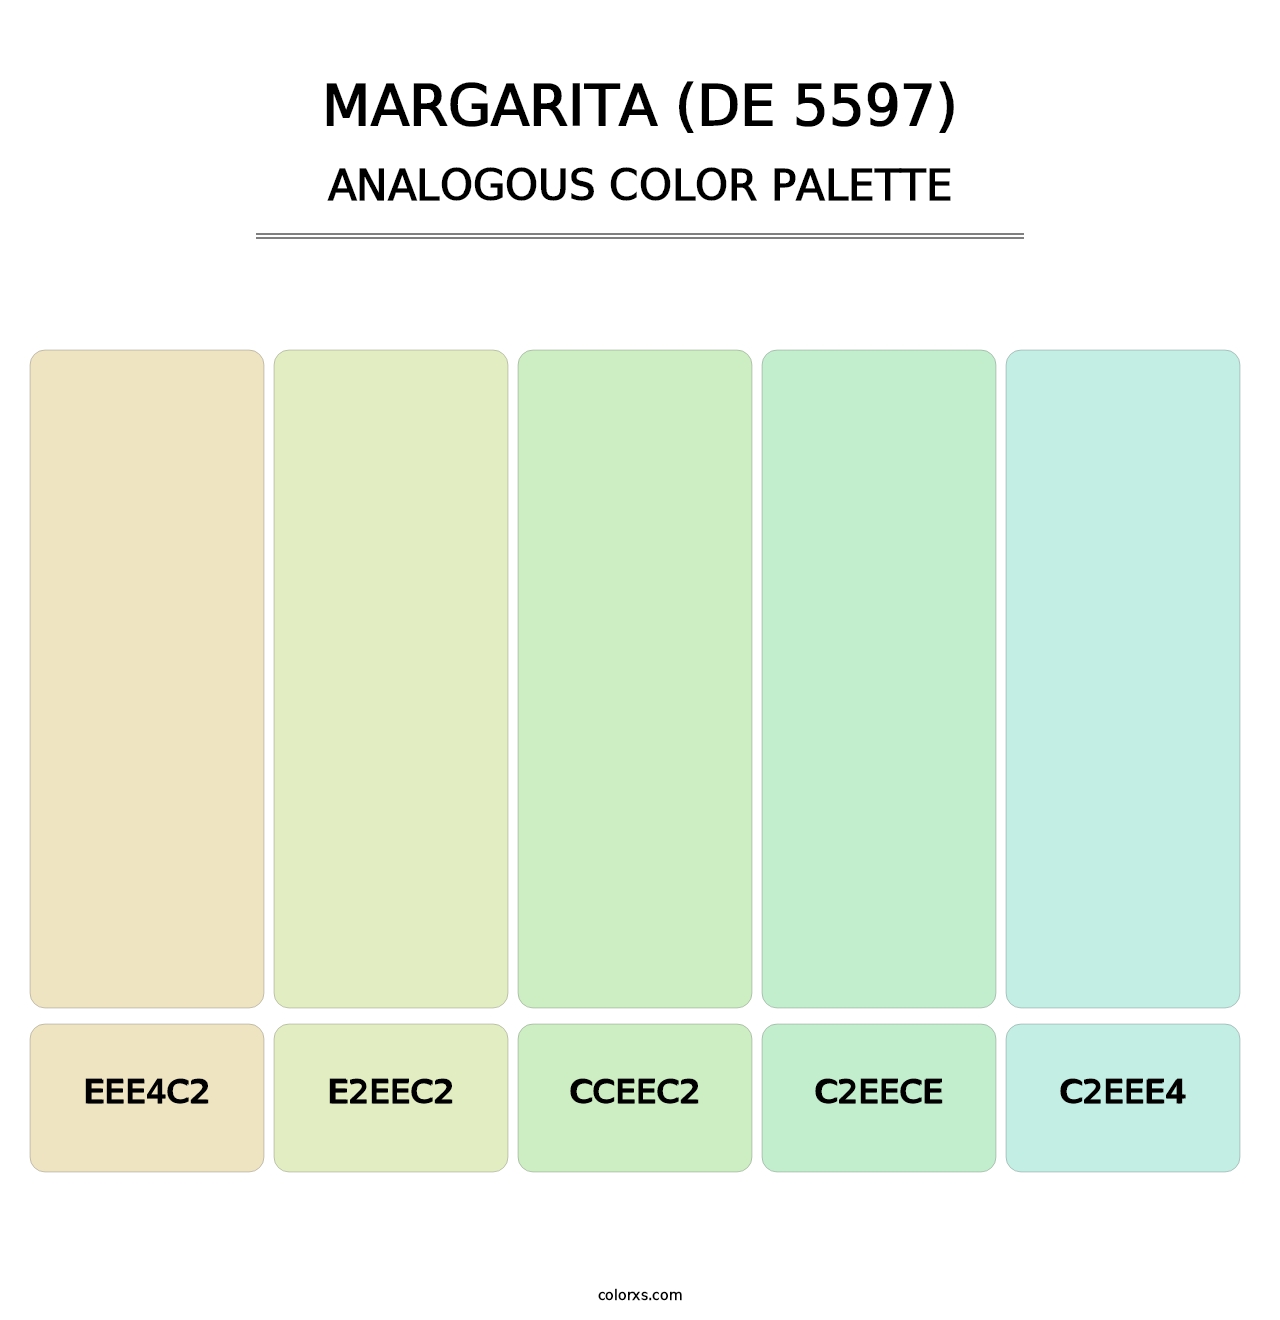 Margarita (DE 5597) - Analogous Color Palette